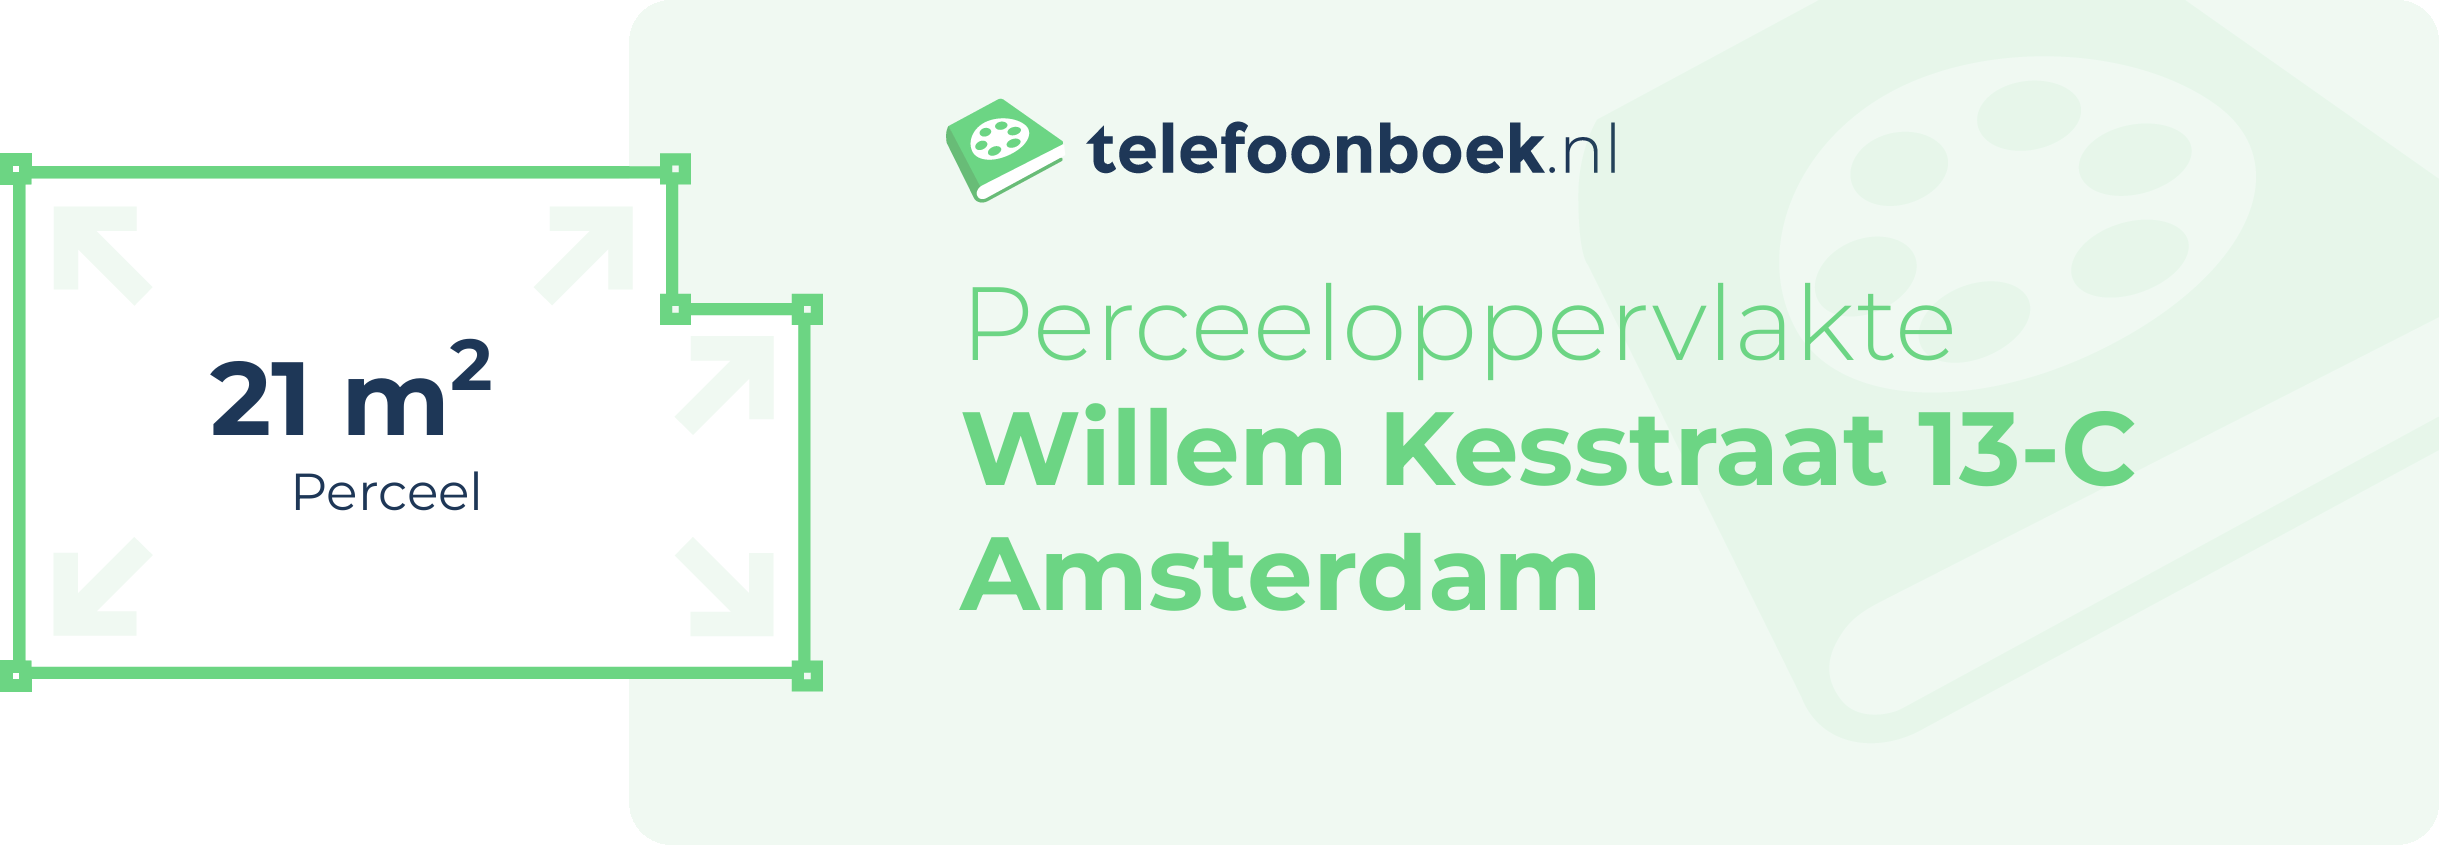 Perceeloppervlakte Willem Kesstraat 13-C Amsterdam